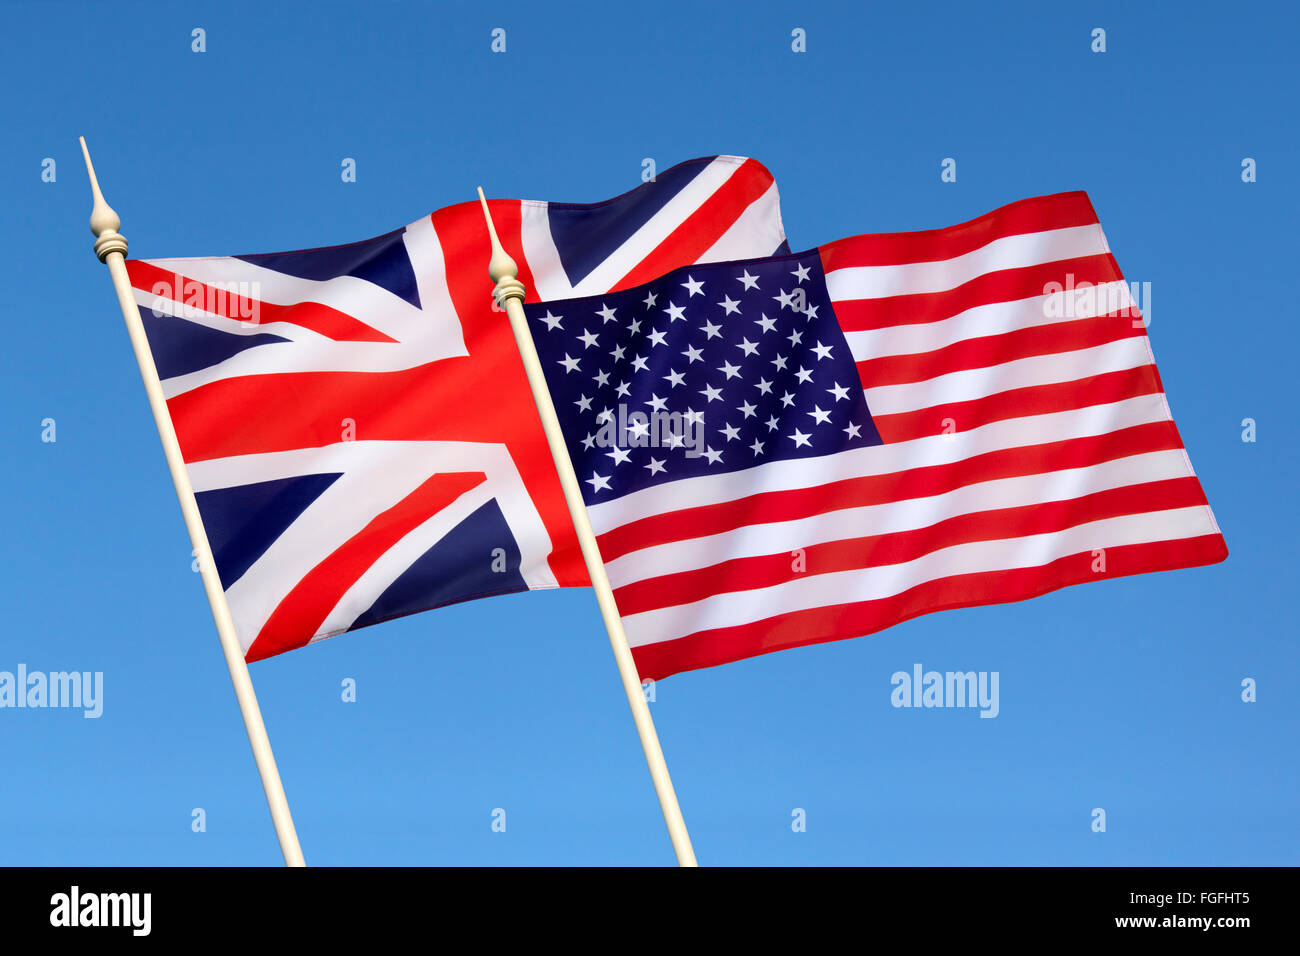 Drapeaux de la Grande-Bretagne et les États-Unis d'Amérique - Relation spéciale Banque D'Images